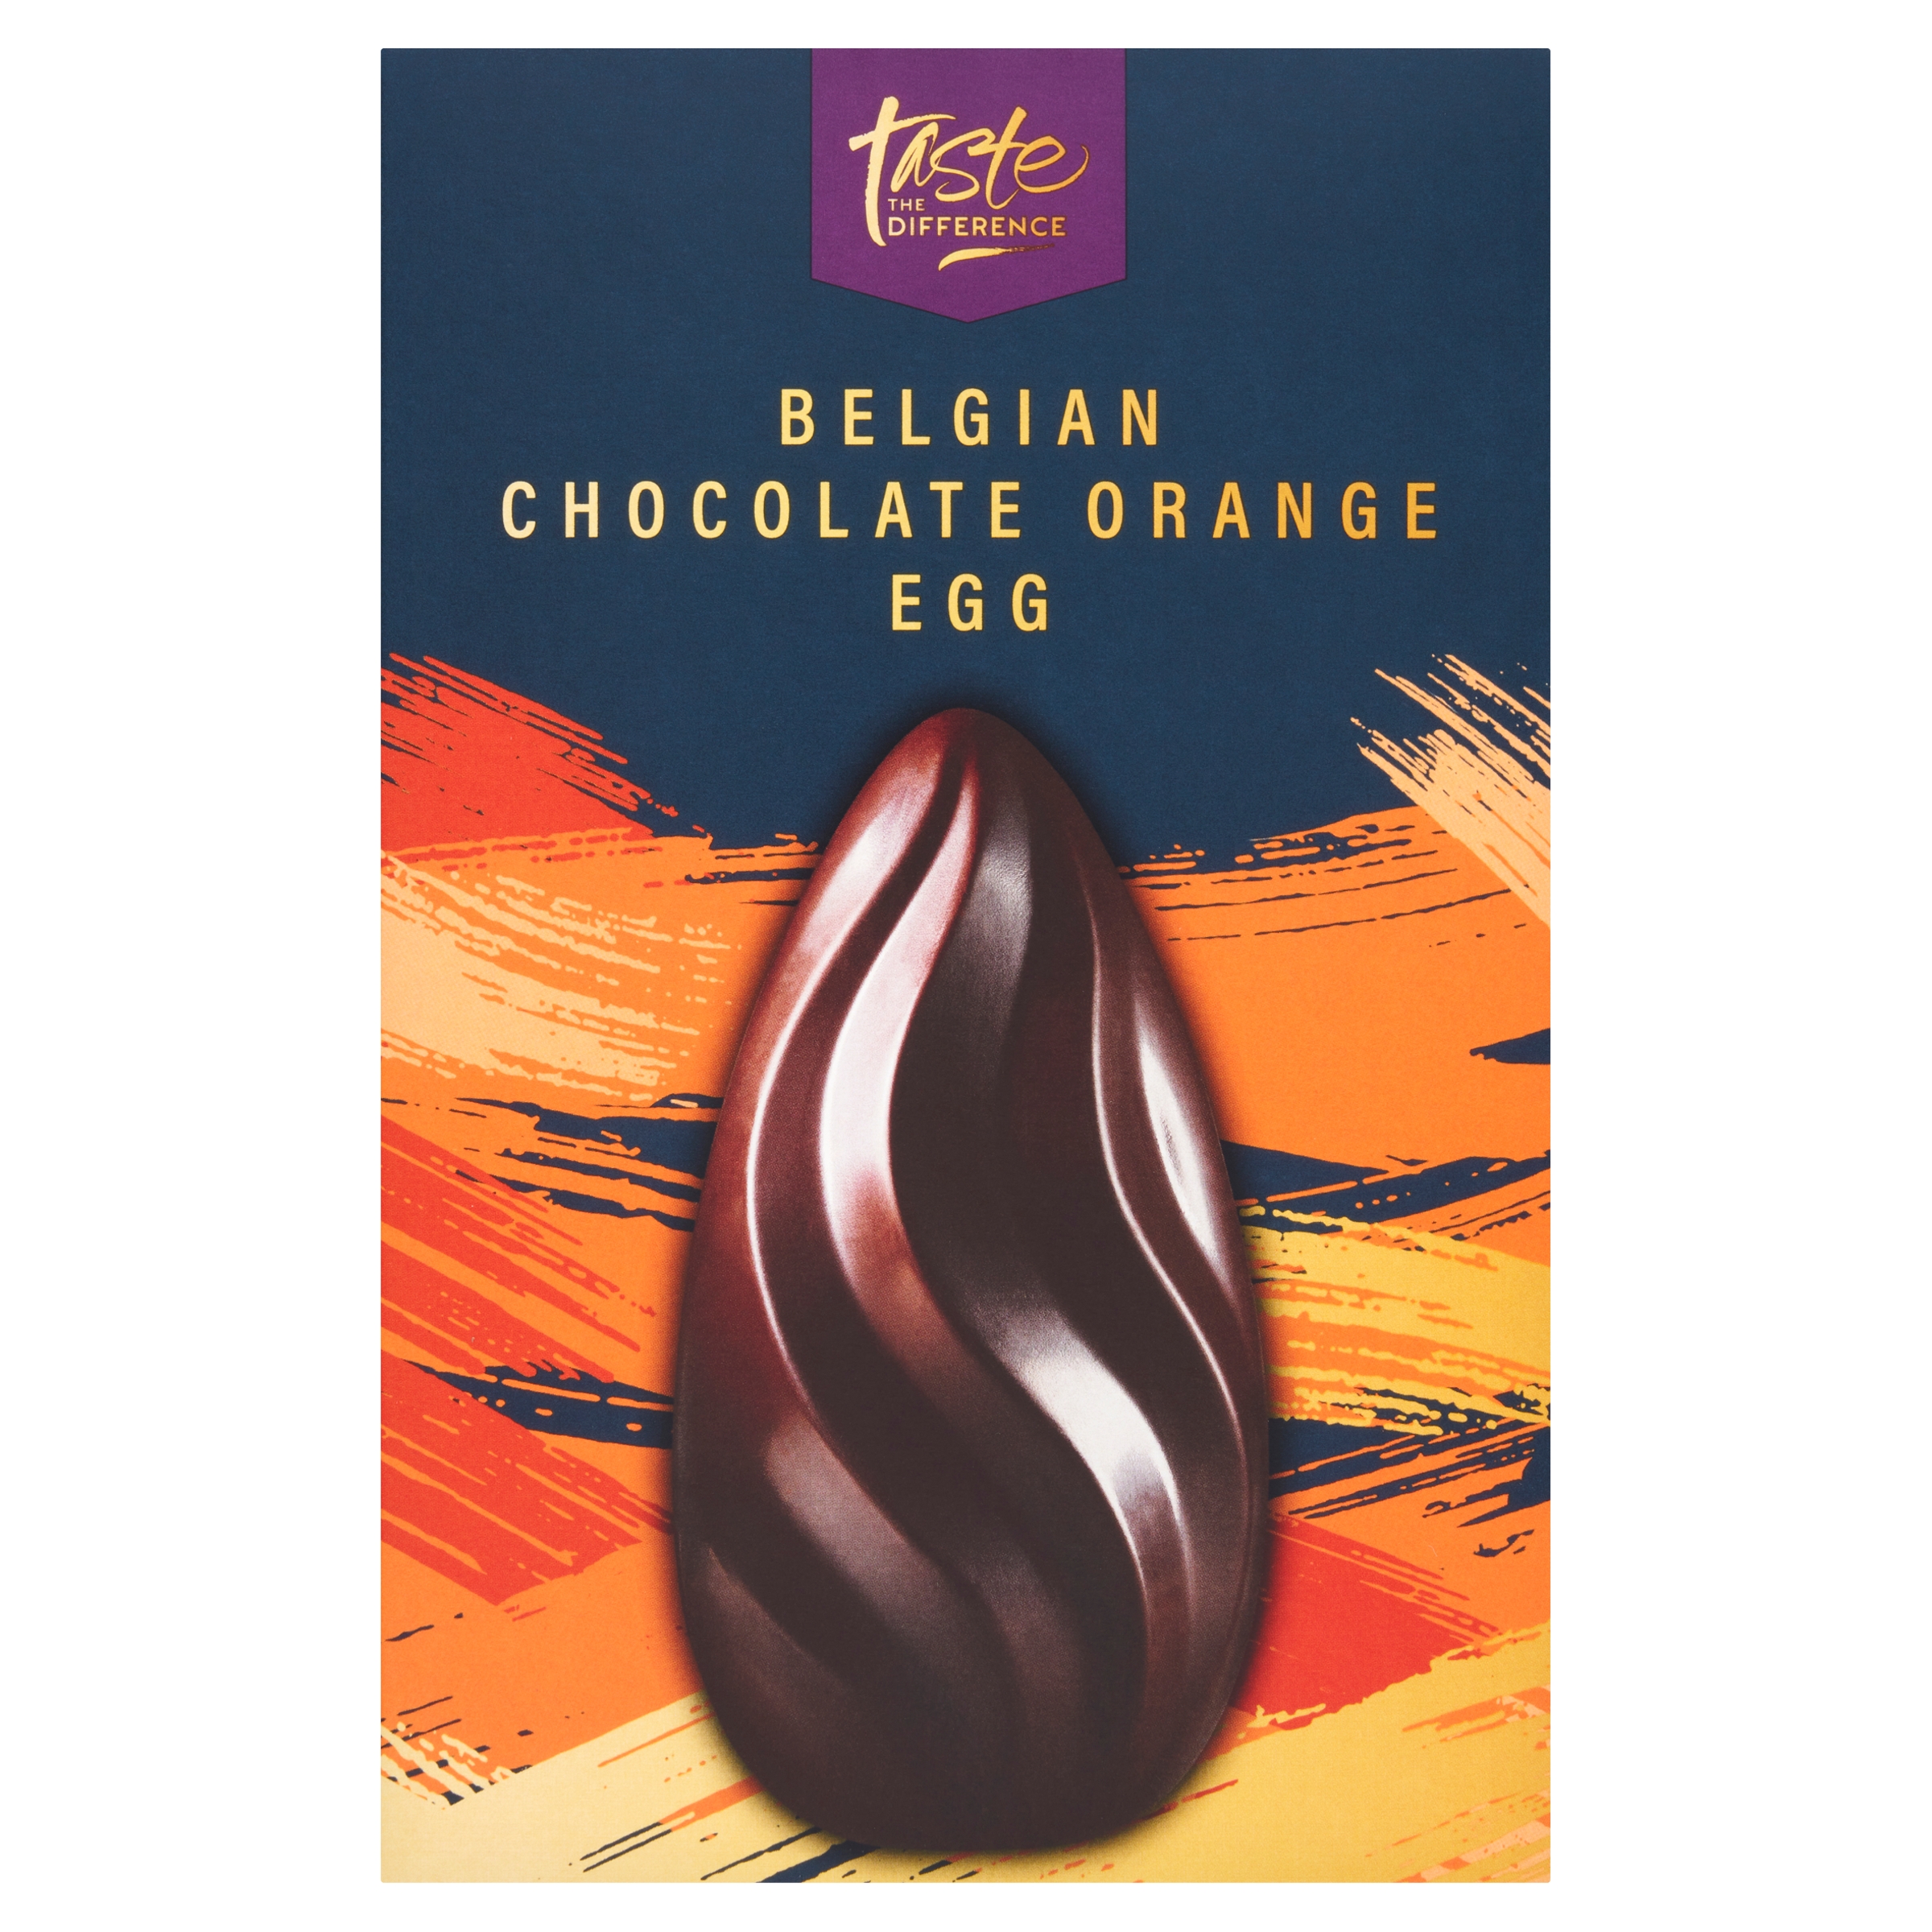 Das belgische Schokoladen-Orangen-Ei von Sainsbury wurde zum nachhaltigsten preisgünstigen Osterei gekürt